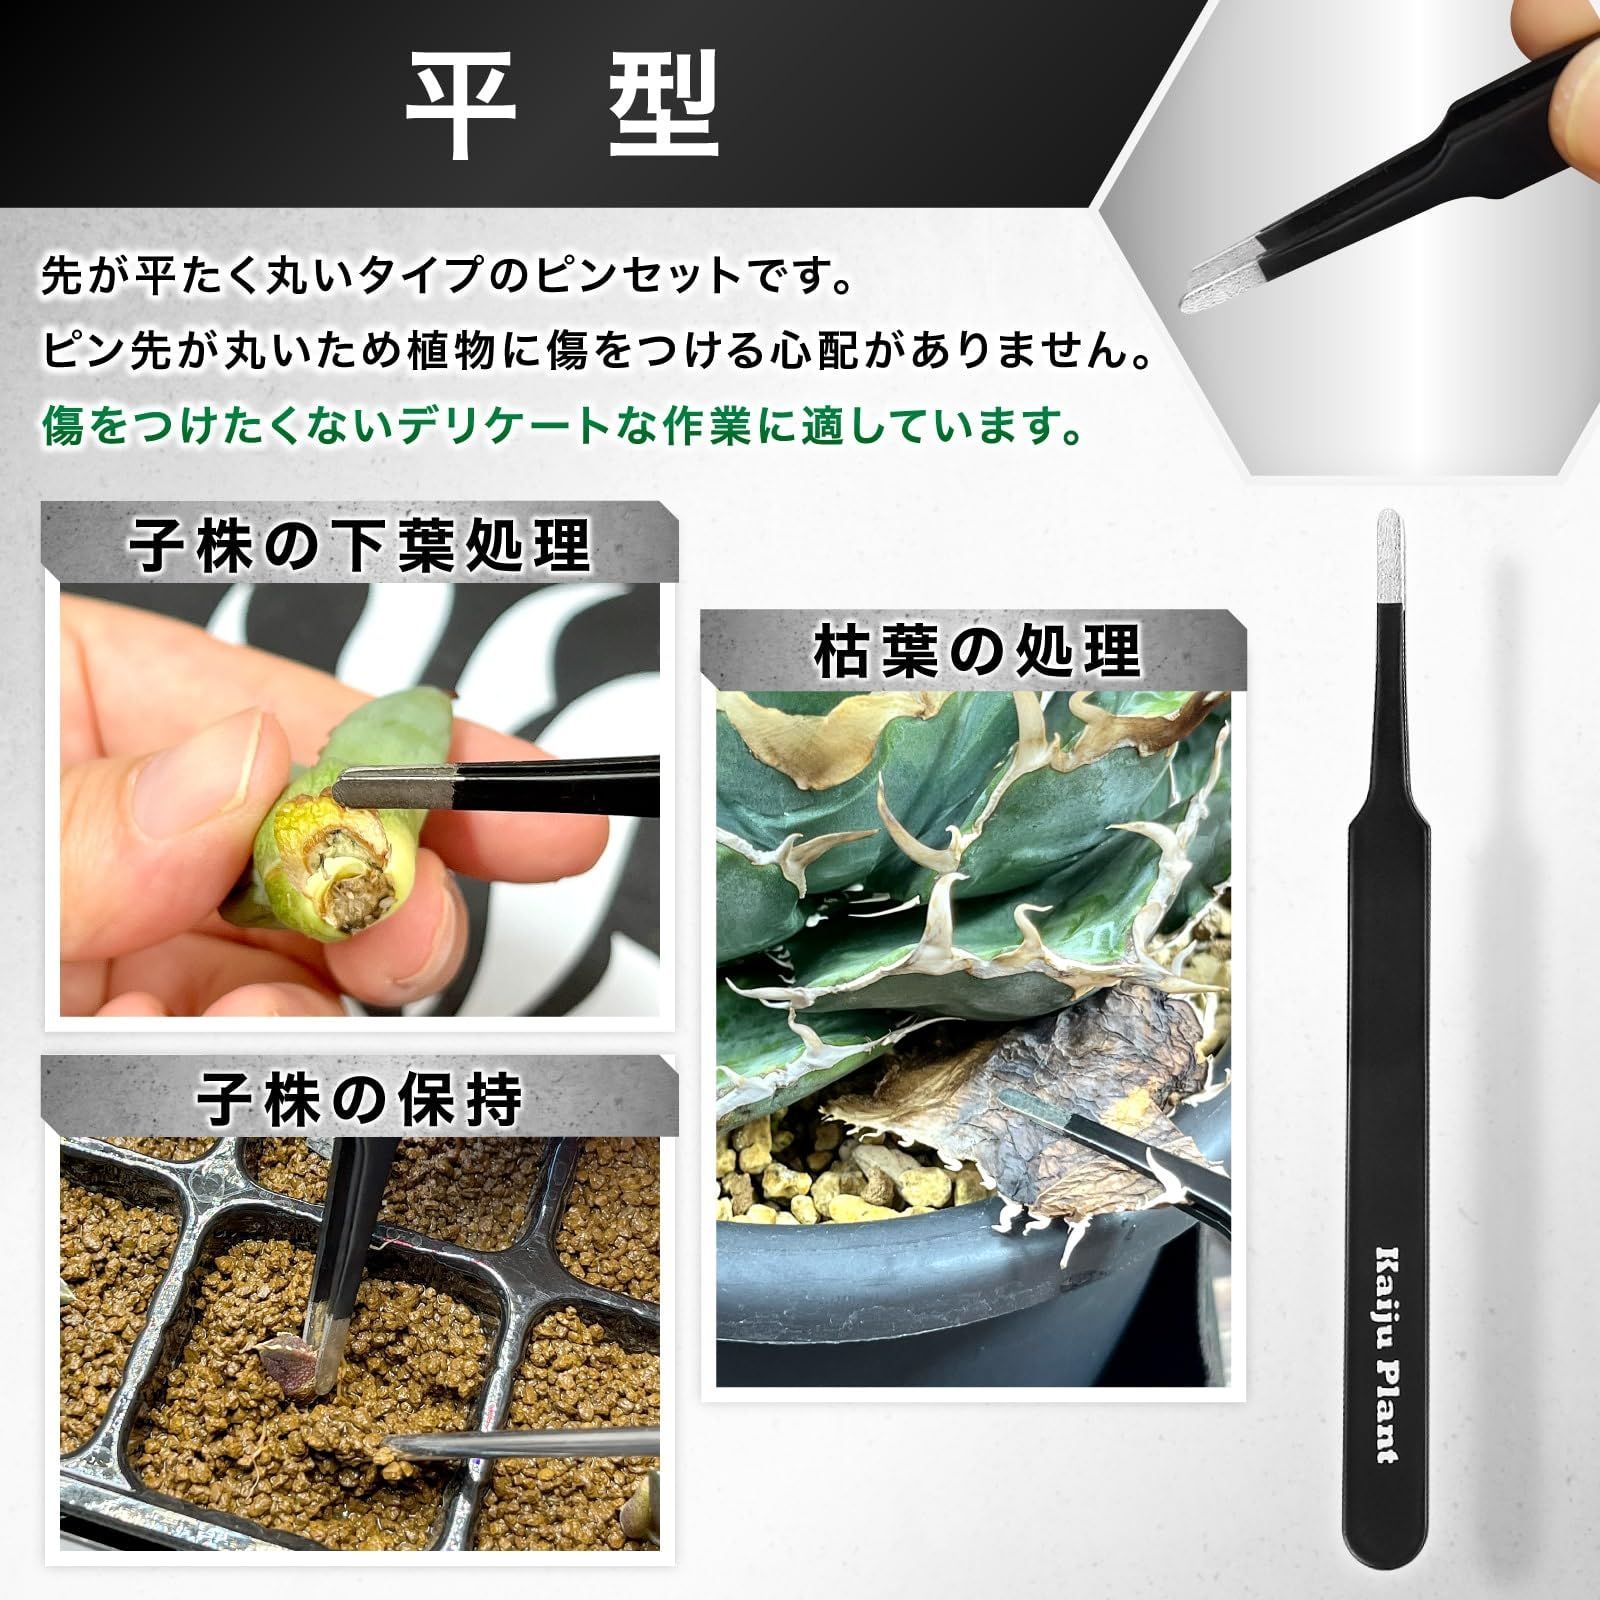 Kaiju Plant ピンセット 4種 + 根かき棒 植替え 美しく仕上げる 多肉 アガベ サボテン 園芸 DIY ポーチ付き ステンレス